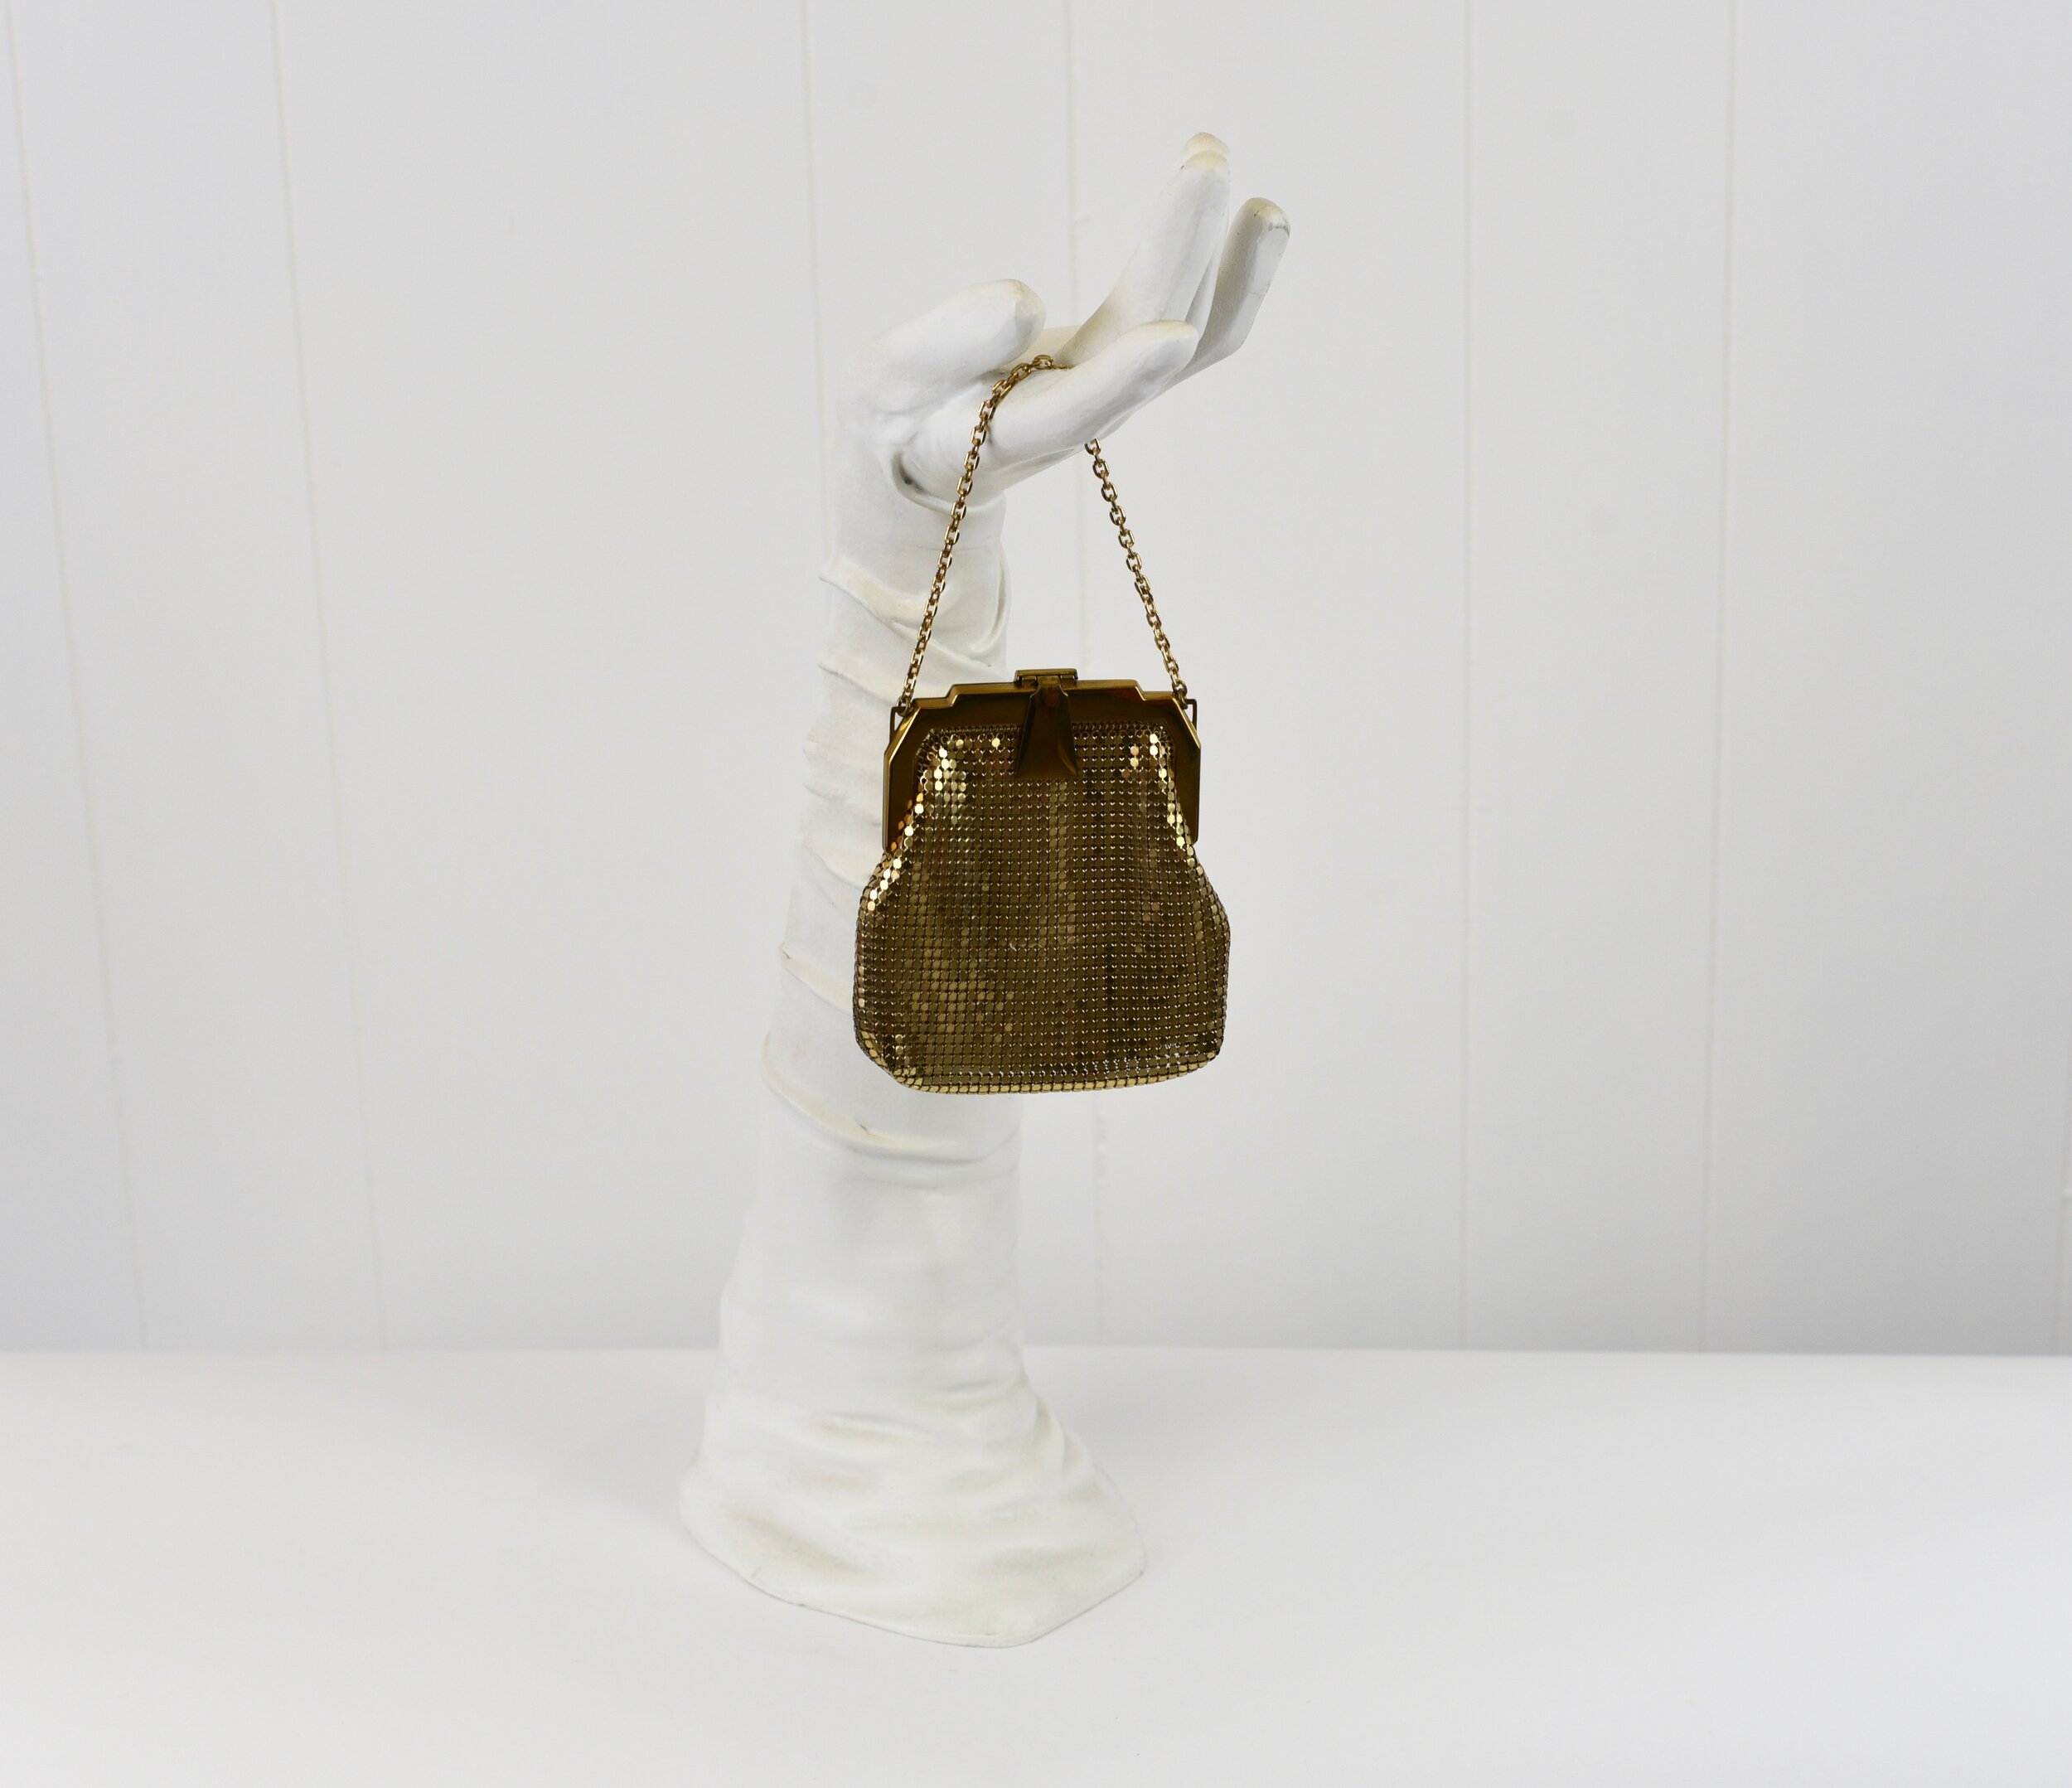 40s metal mesh purse WHITING & DAVIS ivory mesh... - Depop